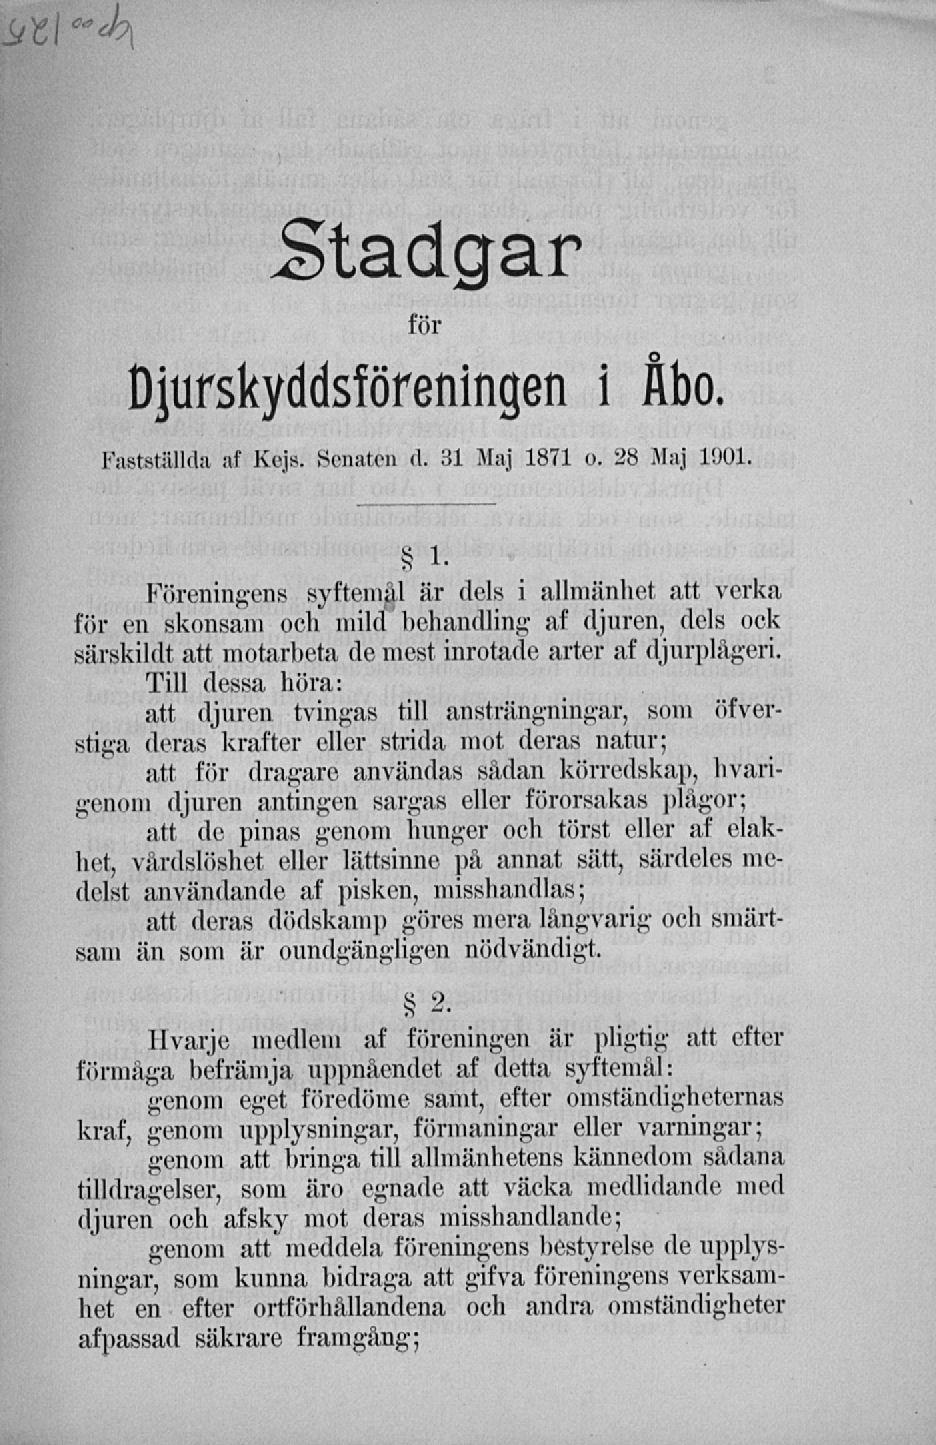 ""ih Stadgar för Djurskyddsföreningen i Åbo. Fastställda af Kejs. Sonaten d. 31 Maj 1871 o. 28 Maj 1901. s i.